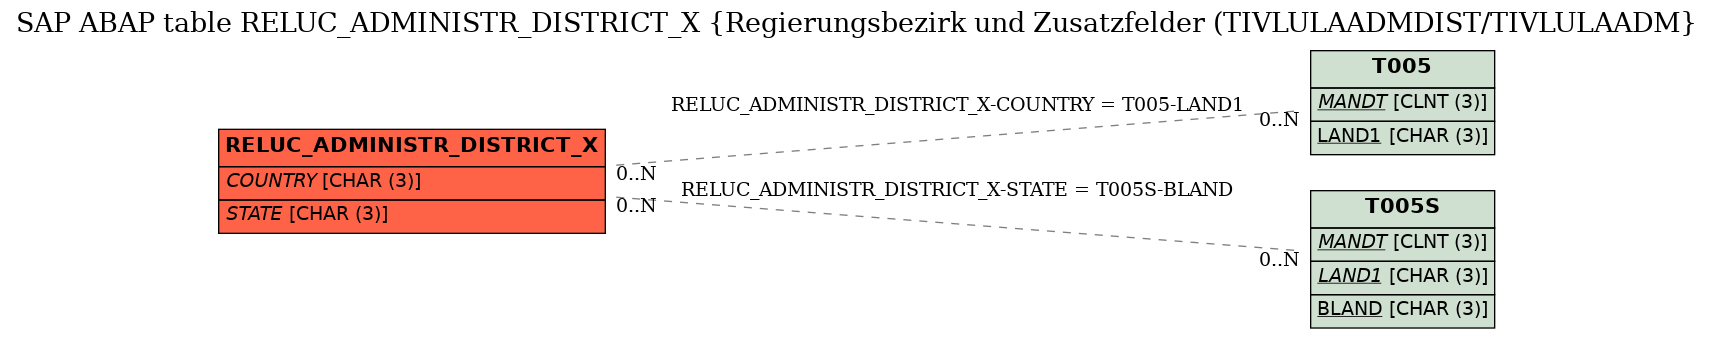 E-R Diagram for table RELUC_ADMINISTR_DISTRICT_X (Regierungsbezirk und Zusatzfelder (TIVLULAADMDIST/TIVLULAADM)